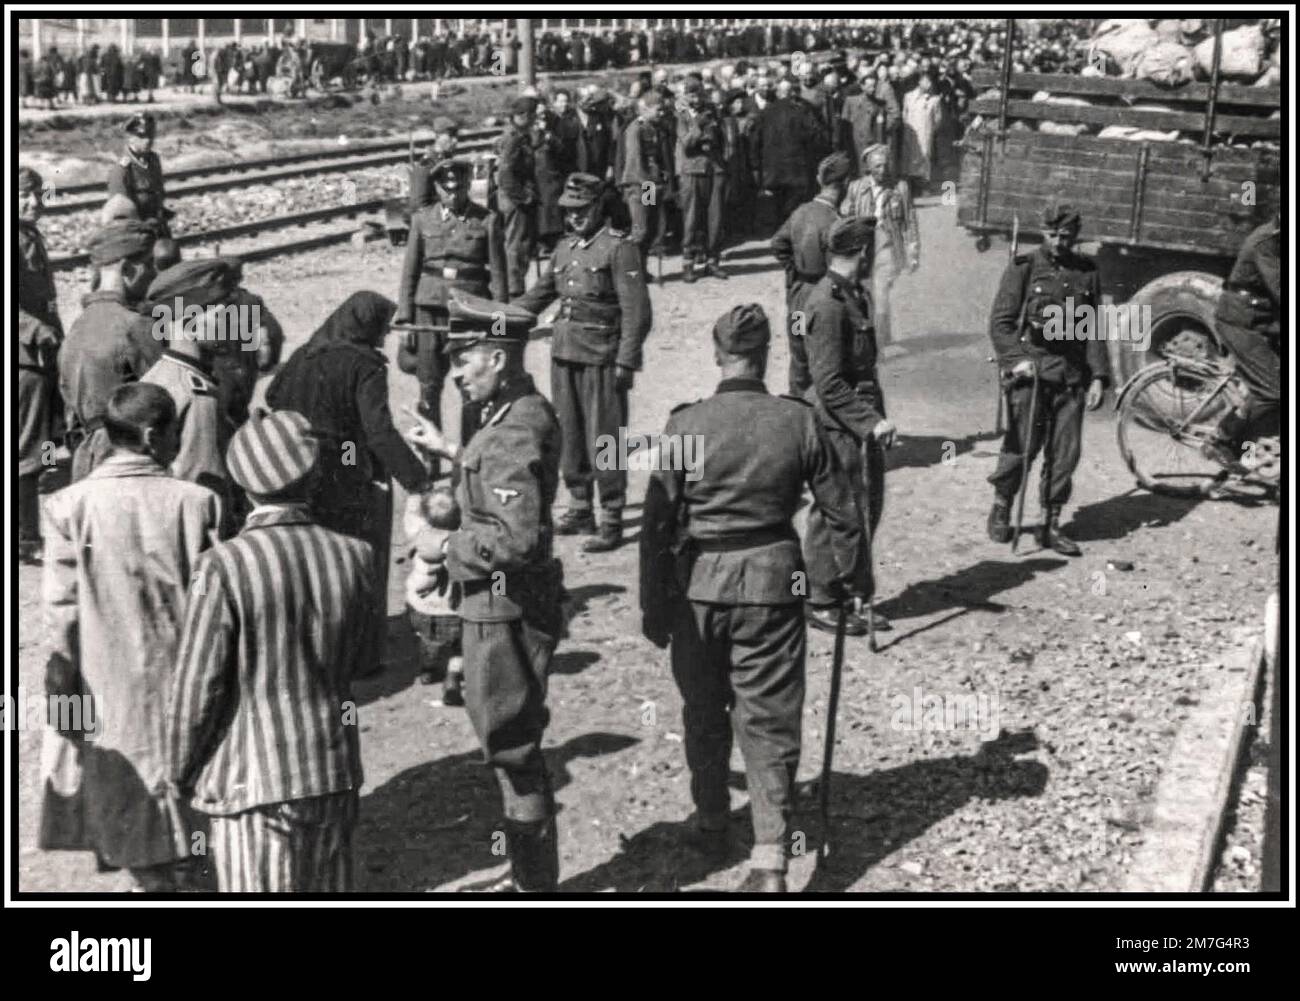 AUSCHWITZ-BIRKENAU, PRIGIONIERI IN FILA PER L'ARRIVO IN CODA, Una visione dell'inferno sulla terra. 1944, i nazisti "giudicano" (vita o morte) ignari prigionieri in convoglio ferroviario fuori dall'ingresso del campo di sterminio di Auschwitz-Birkenau. Il famigerato campo di Auschwitz fu iniziato per ordine di Adolf Hitler nel 1940 durante l'occupazione della Polonia da parte della Germania nazista durante la seconda guerra mondiale, ulteriormente reso possibile da Heinrich Luitpold Himmler il Reichsführer dello Schutzstaffel, e membro leader del Partito nazista di Germania Foto Stock